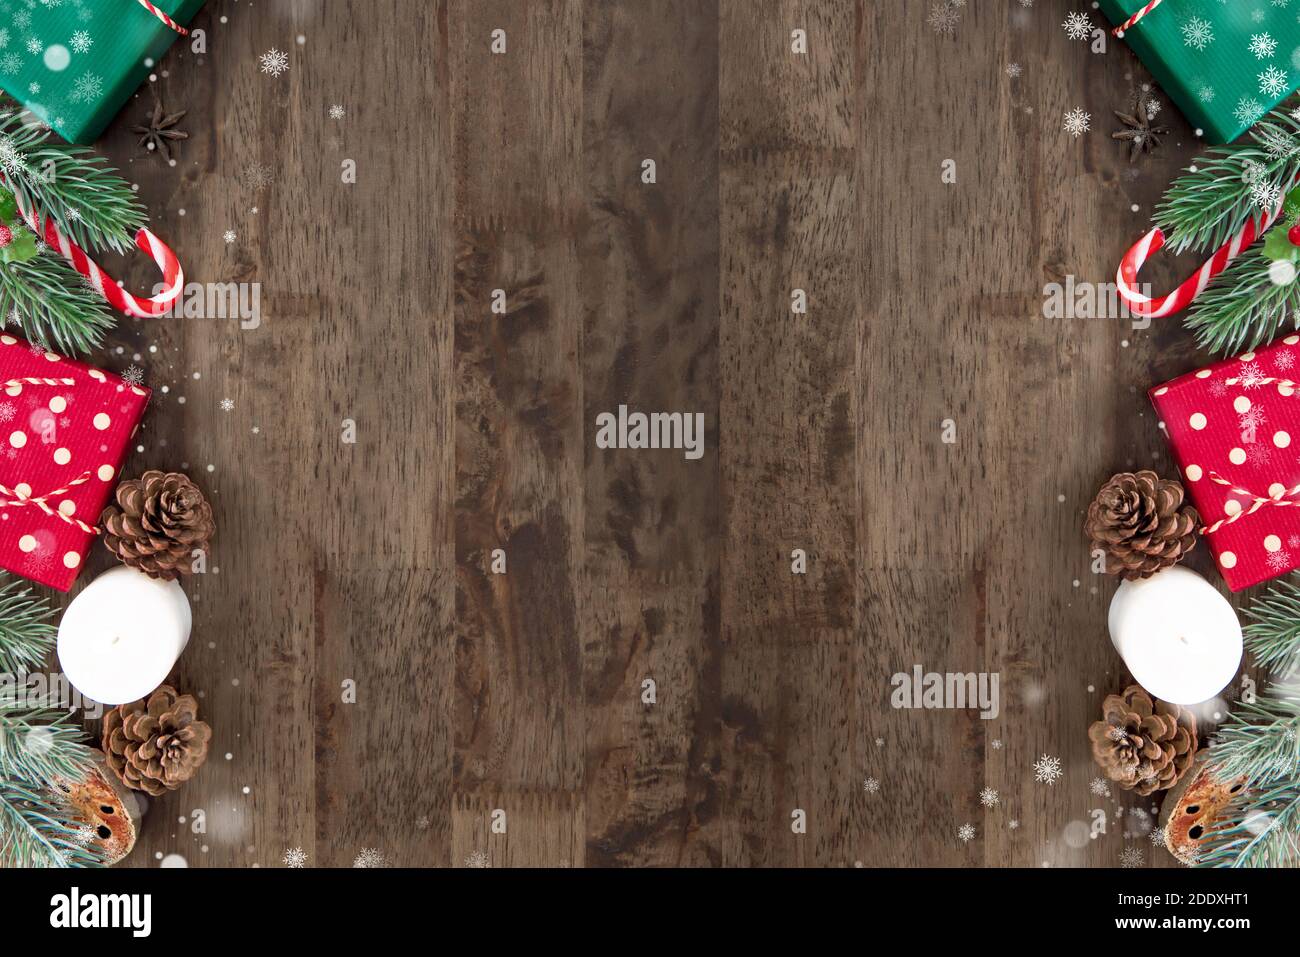 Holzplatte Hintergrund mit leerem Raum in der Mitte und bunte Geschenkboxen mit Weihnachtsdekoration Artikel am Rand, Draufsicht Stockfoto